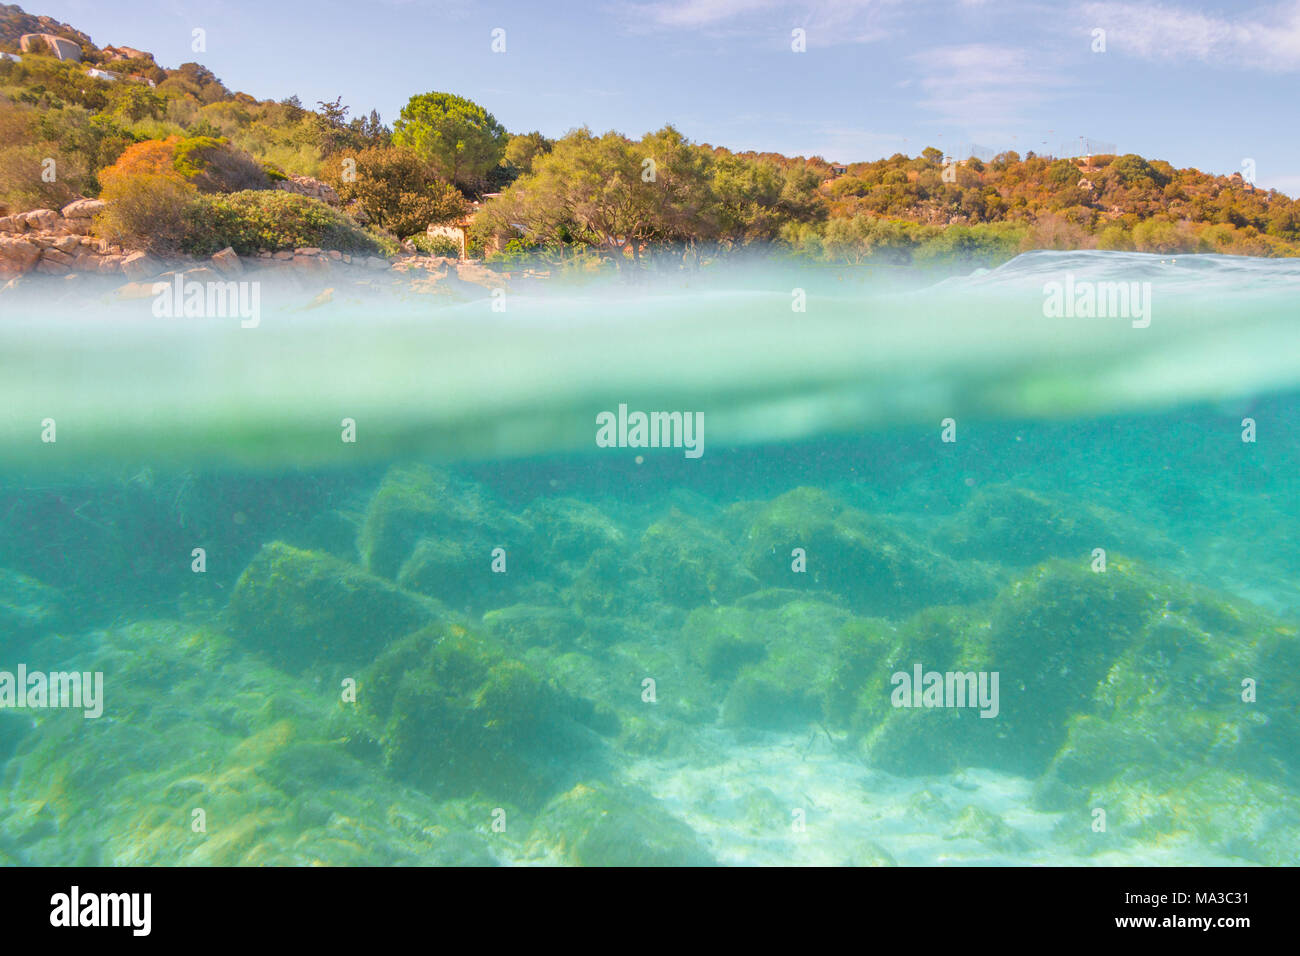 Mezza foto subacquee con il letto del mare e gli alberi in arinella (Olbia), provincia di Olbia-Tempio, distretto di Sardegna, Italia Foto Stock